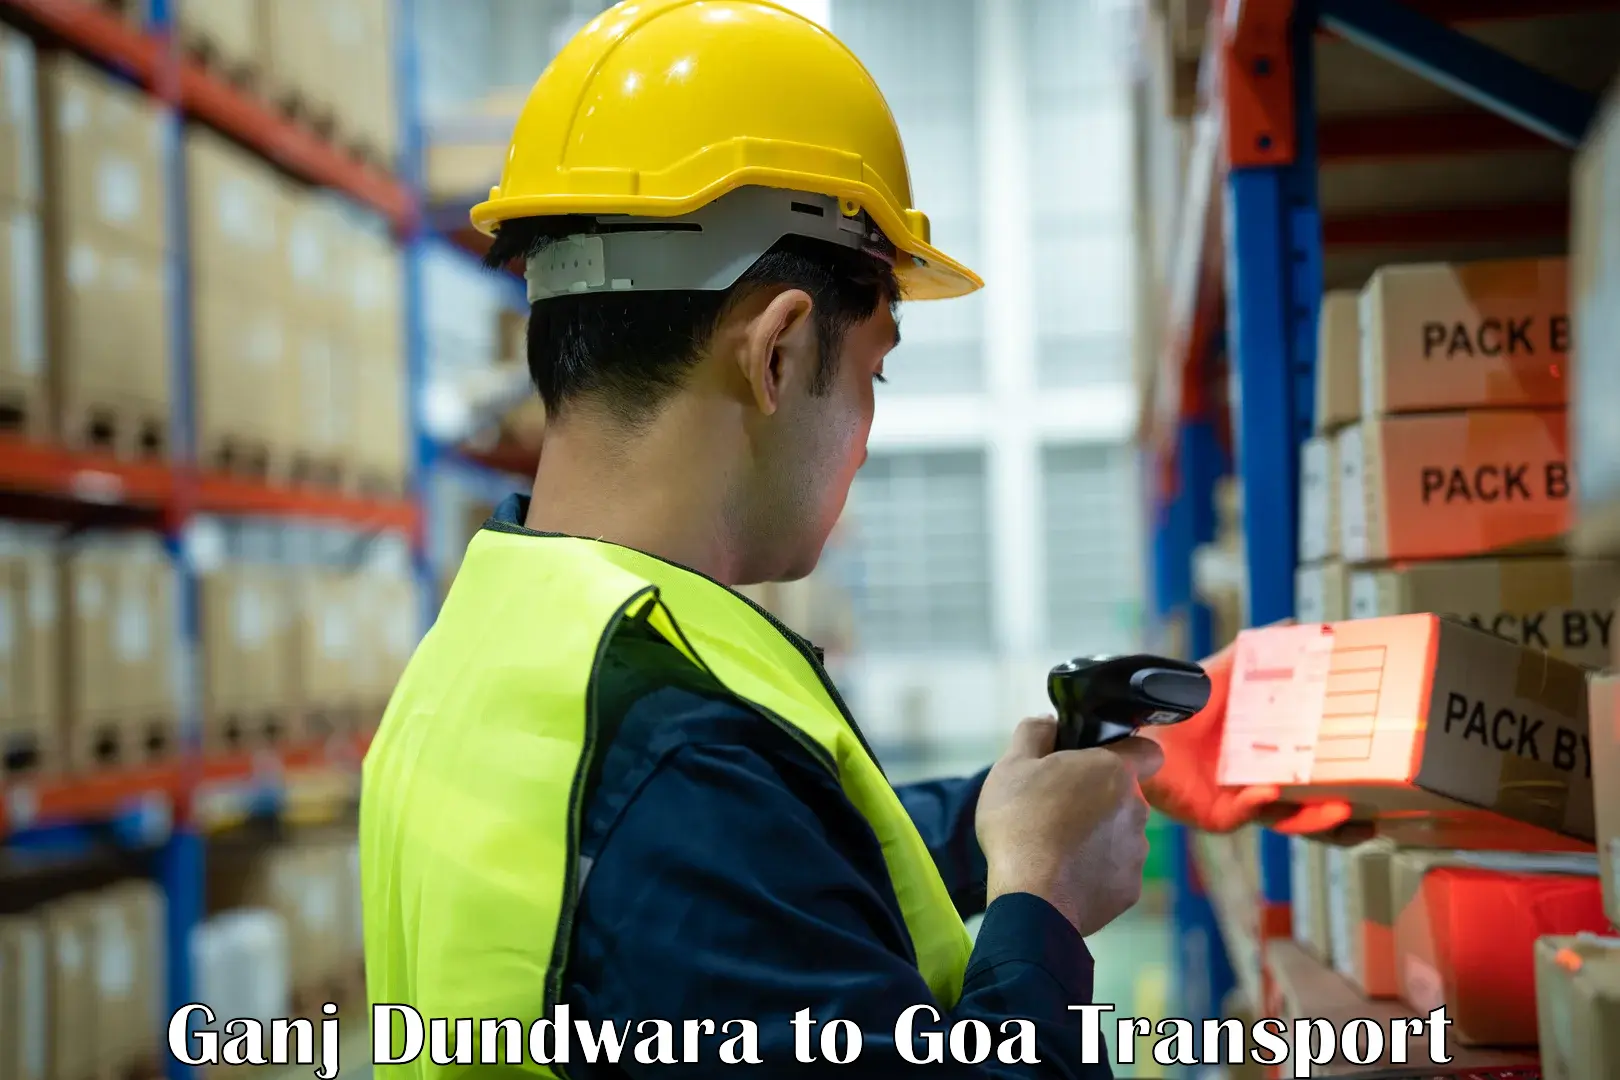 Luggage transport services Ganj Dundwara to Ponda